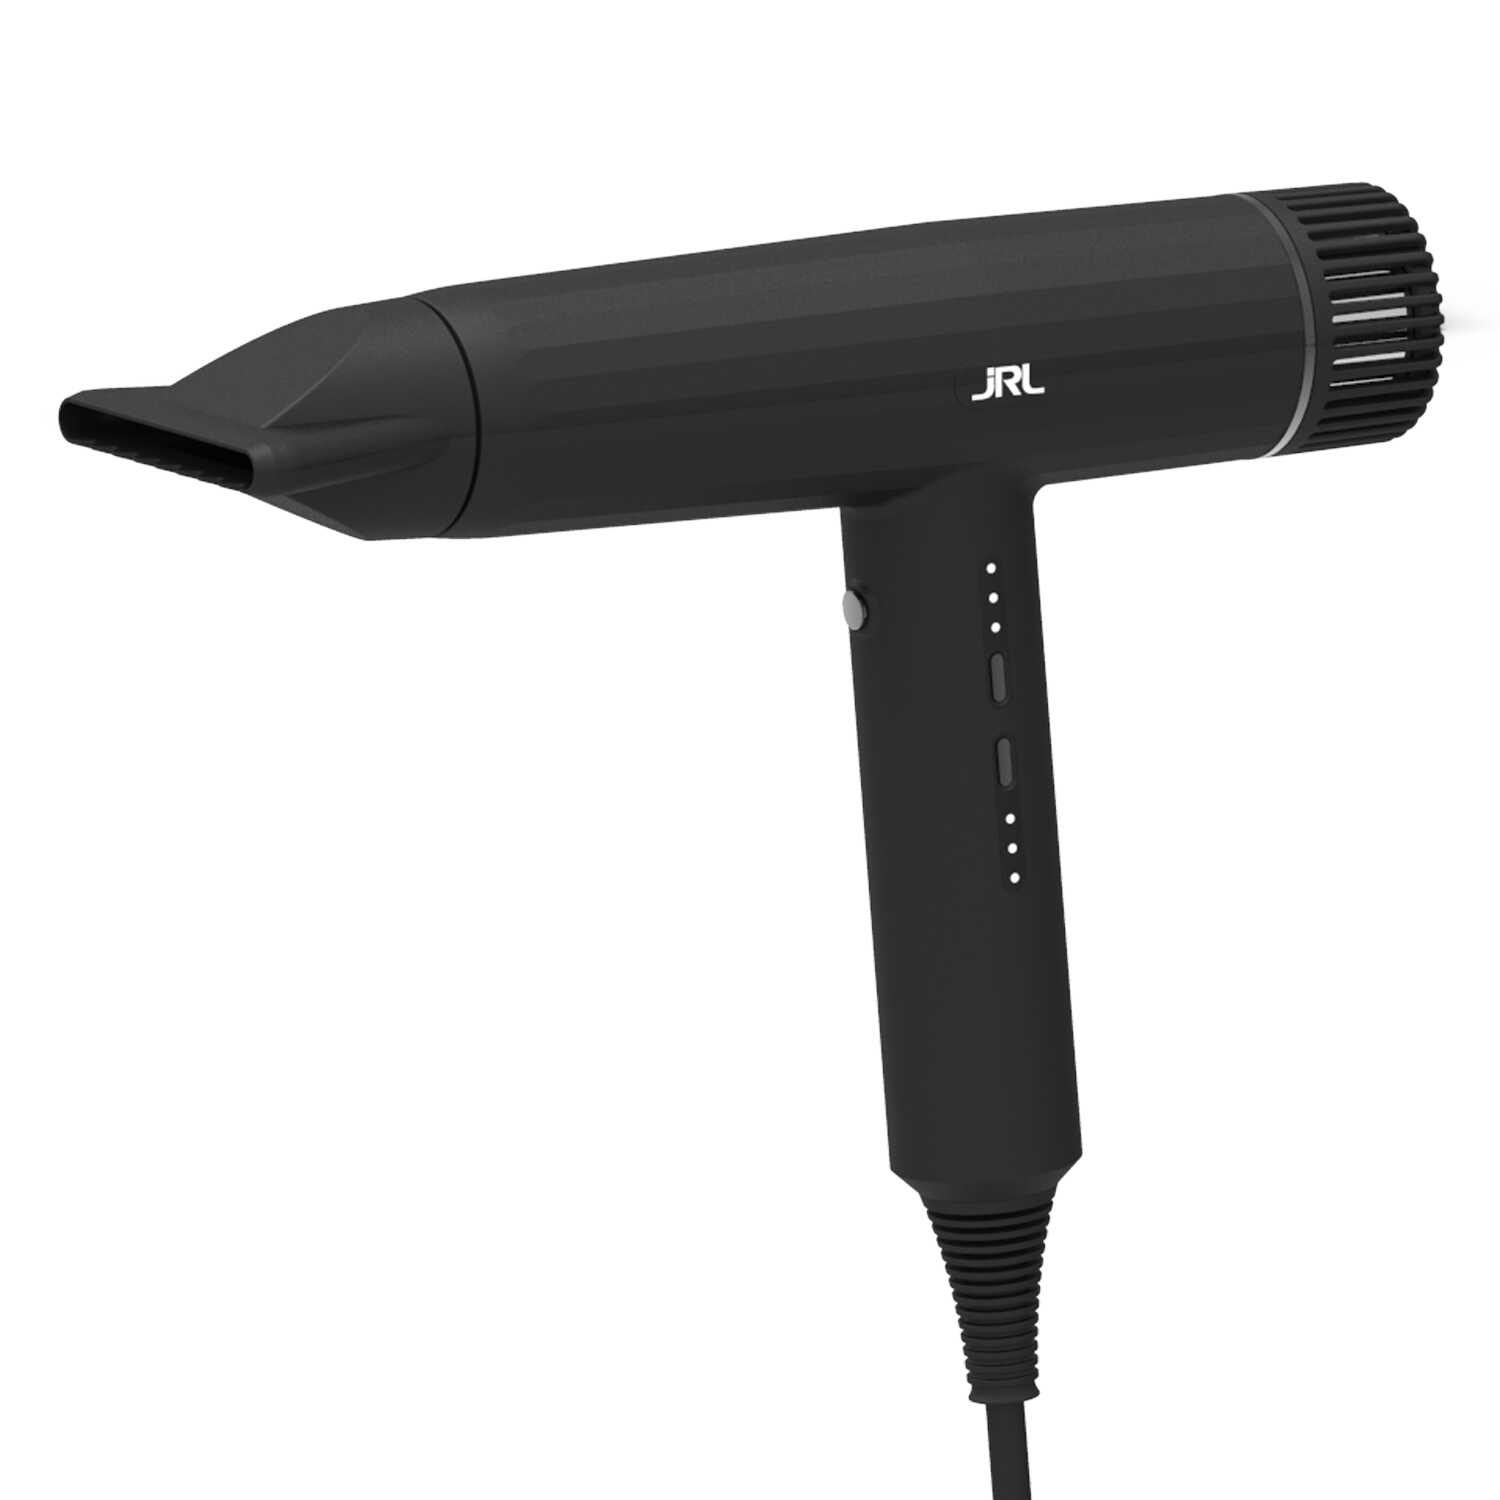 JRL USA Forte Pro Dryer - profesionální barber fén na vlasy, 2150W